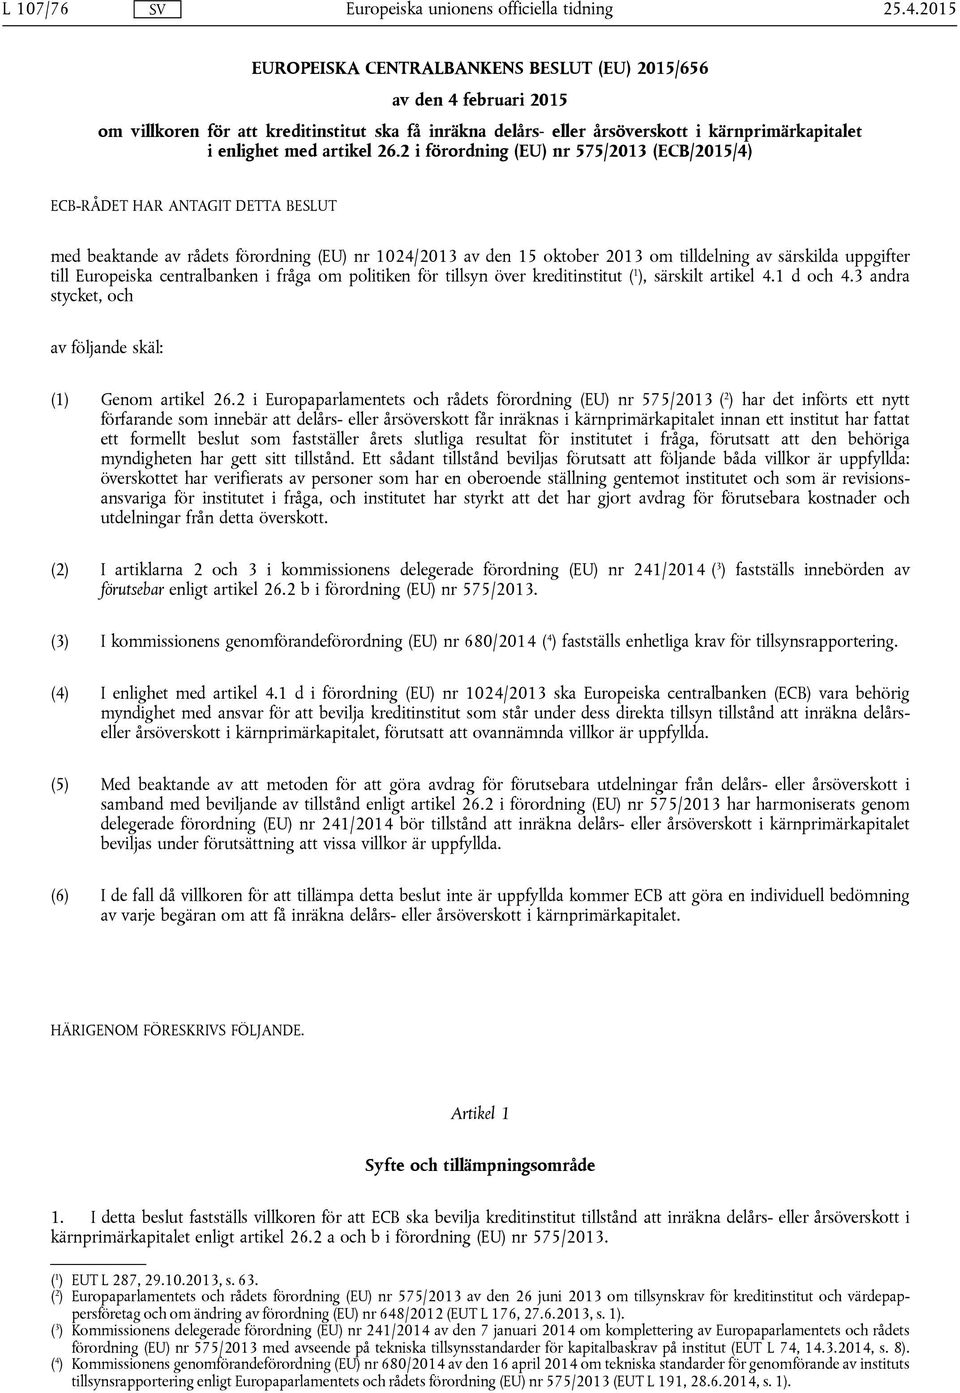 26.2 i förordning (EU) nr 575/2013 (ECB/2015/4) ECB-RÅDET HAR ANTAGIT DETTA BESLUT med beaktande av rådets förordning (EU) nr 1024/2013 av den 15 oktober 2013 om tilldelning av särskilda uppgifter